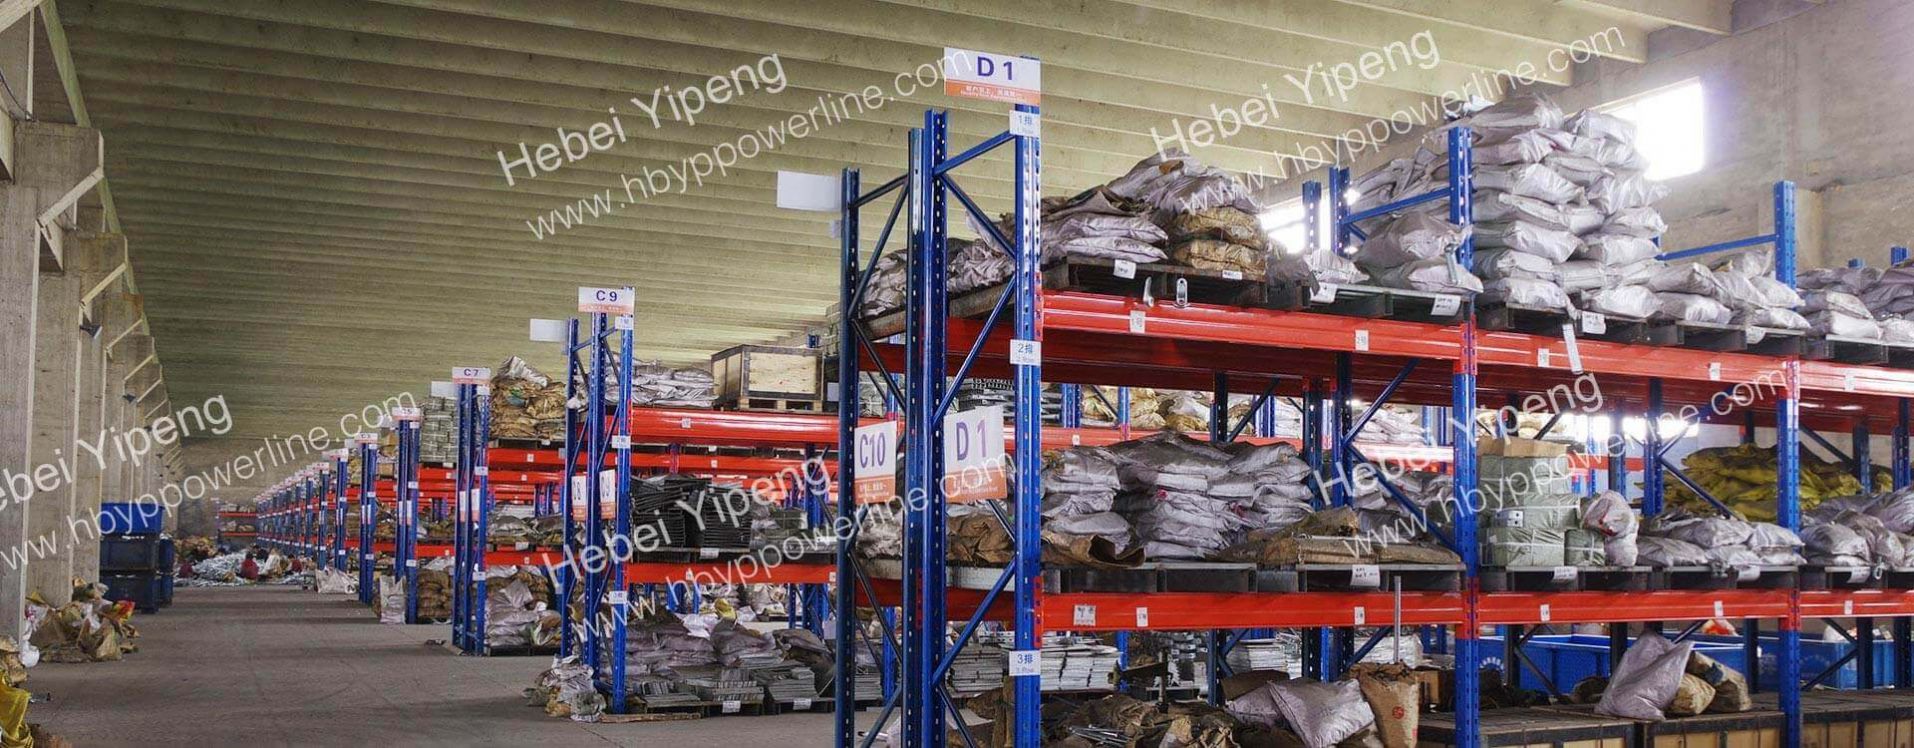 Lipeng Line Equipment Warehouse